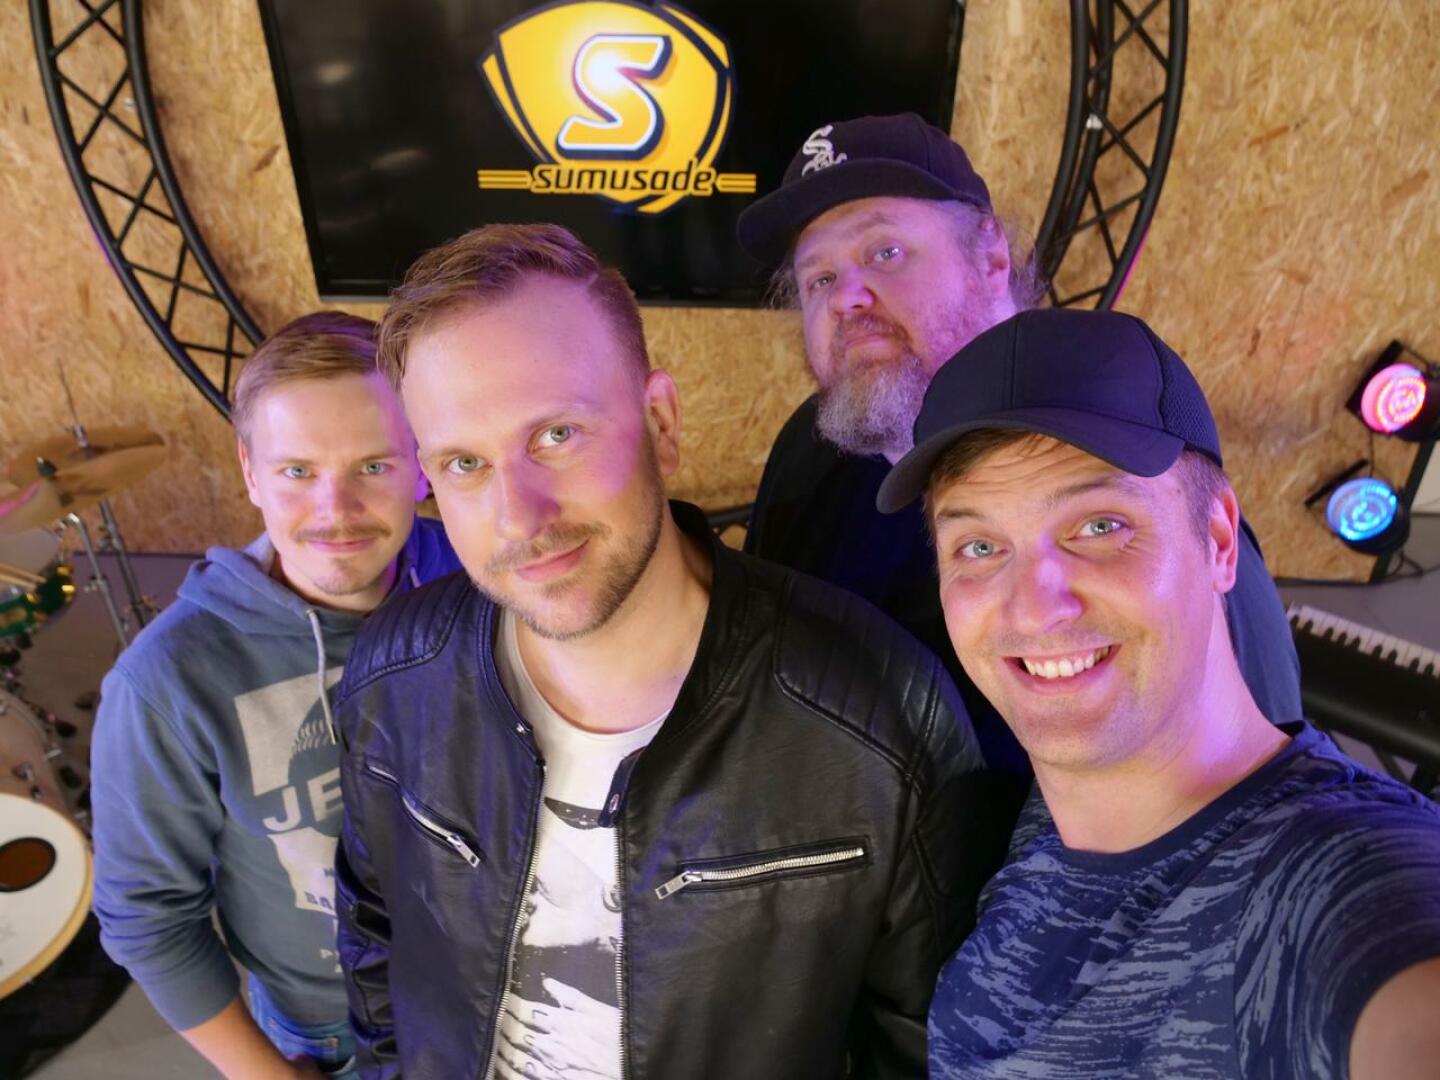 Sumusade-yhtyeessä musisoivat Jonne Mäkipelto (vas.), Johannes Ahlvik, Egon Veevo (takana) ja Ville Mäkipelto. Kuvasta puuttuvat Kalle Mäkipelto, Janne Lautamäki ja Mika Tervaskangas.